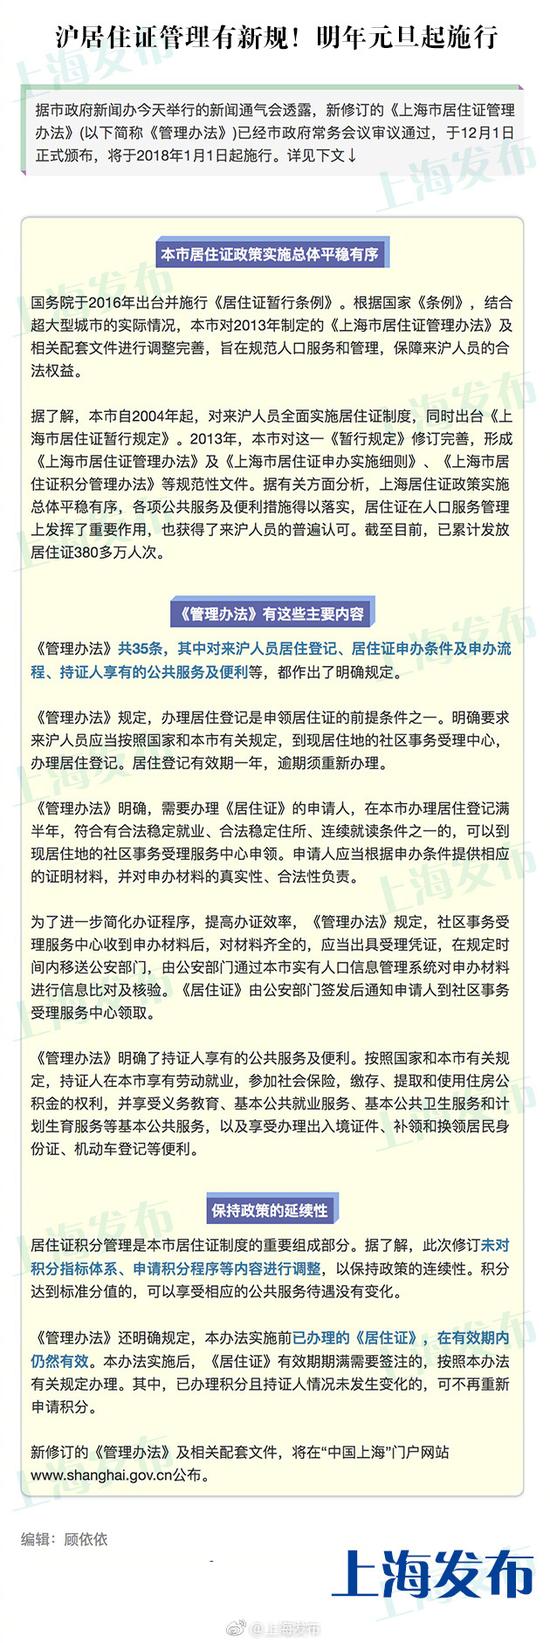 上海通过居住证管理新规:居住登记满半年可申